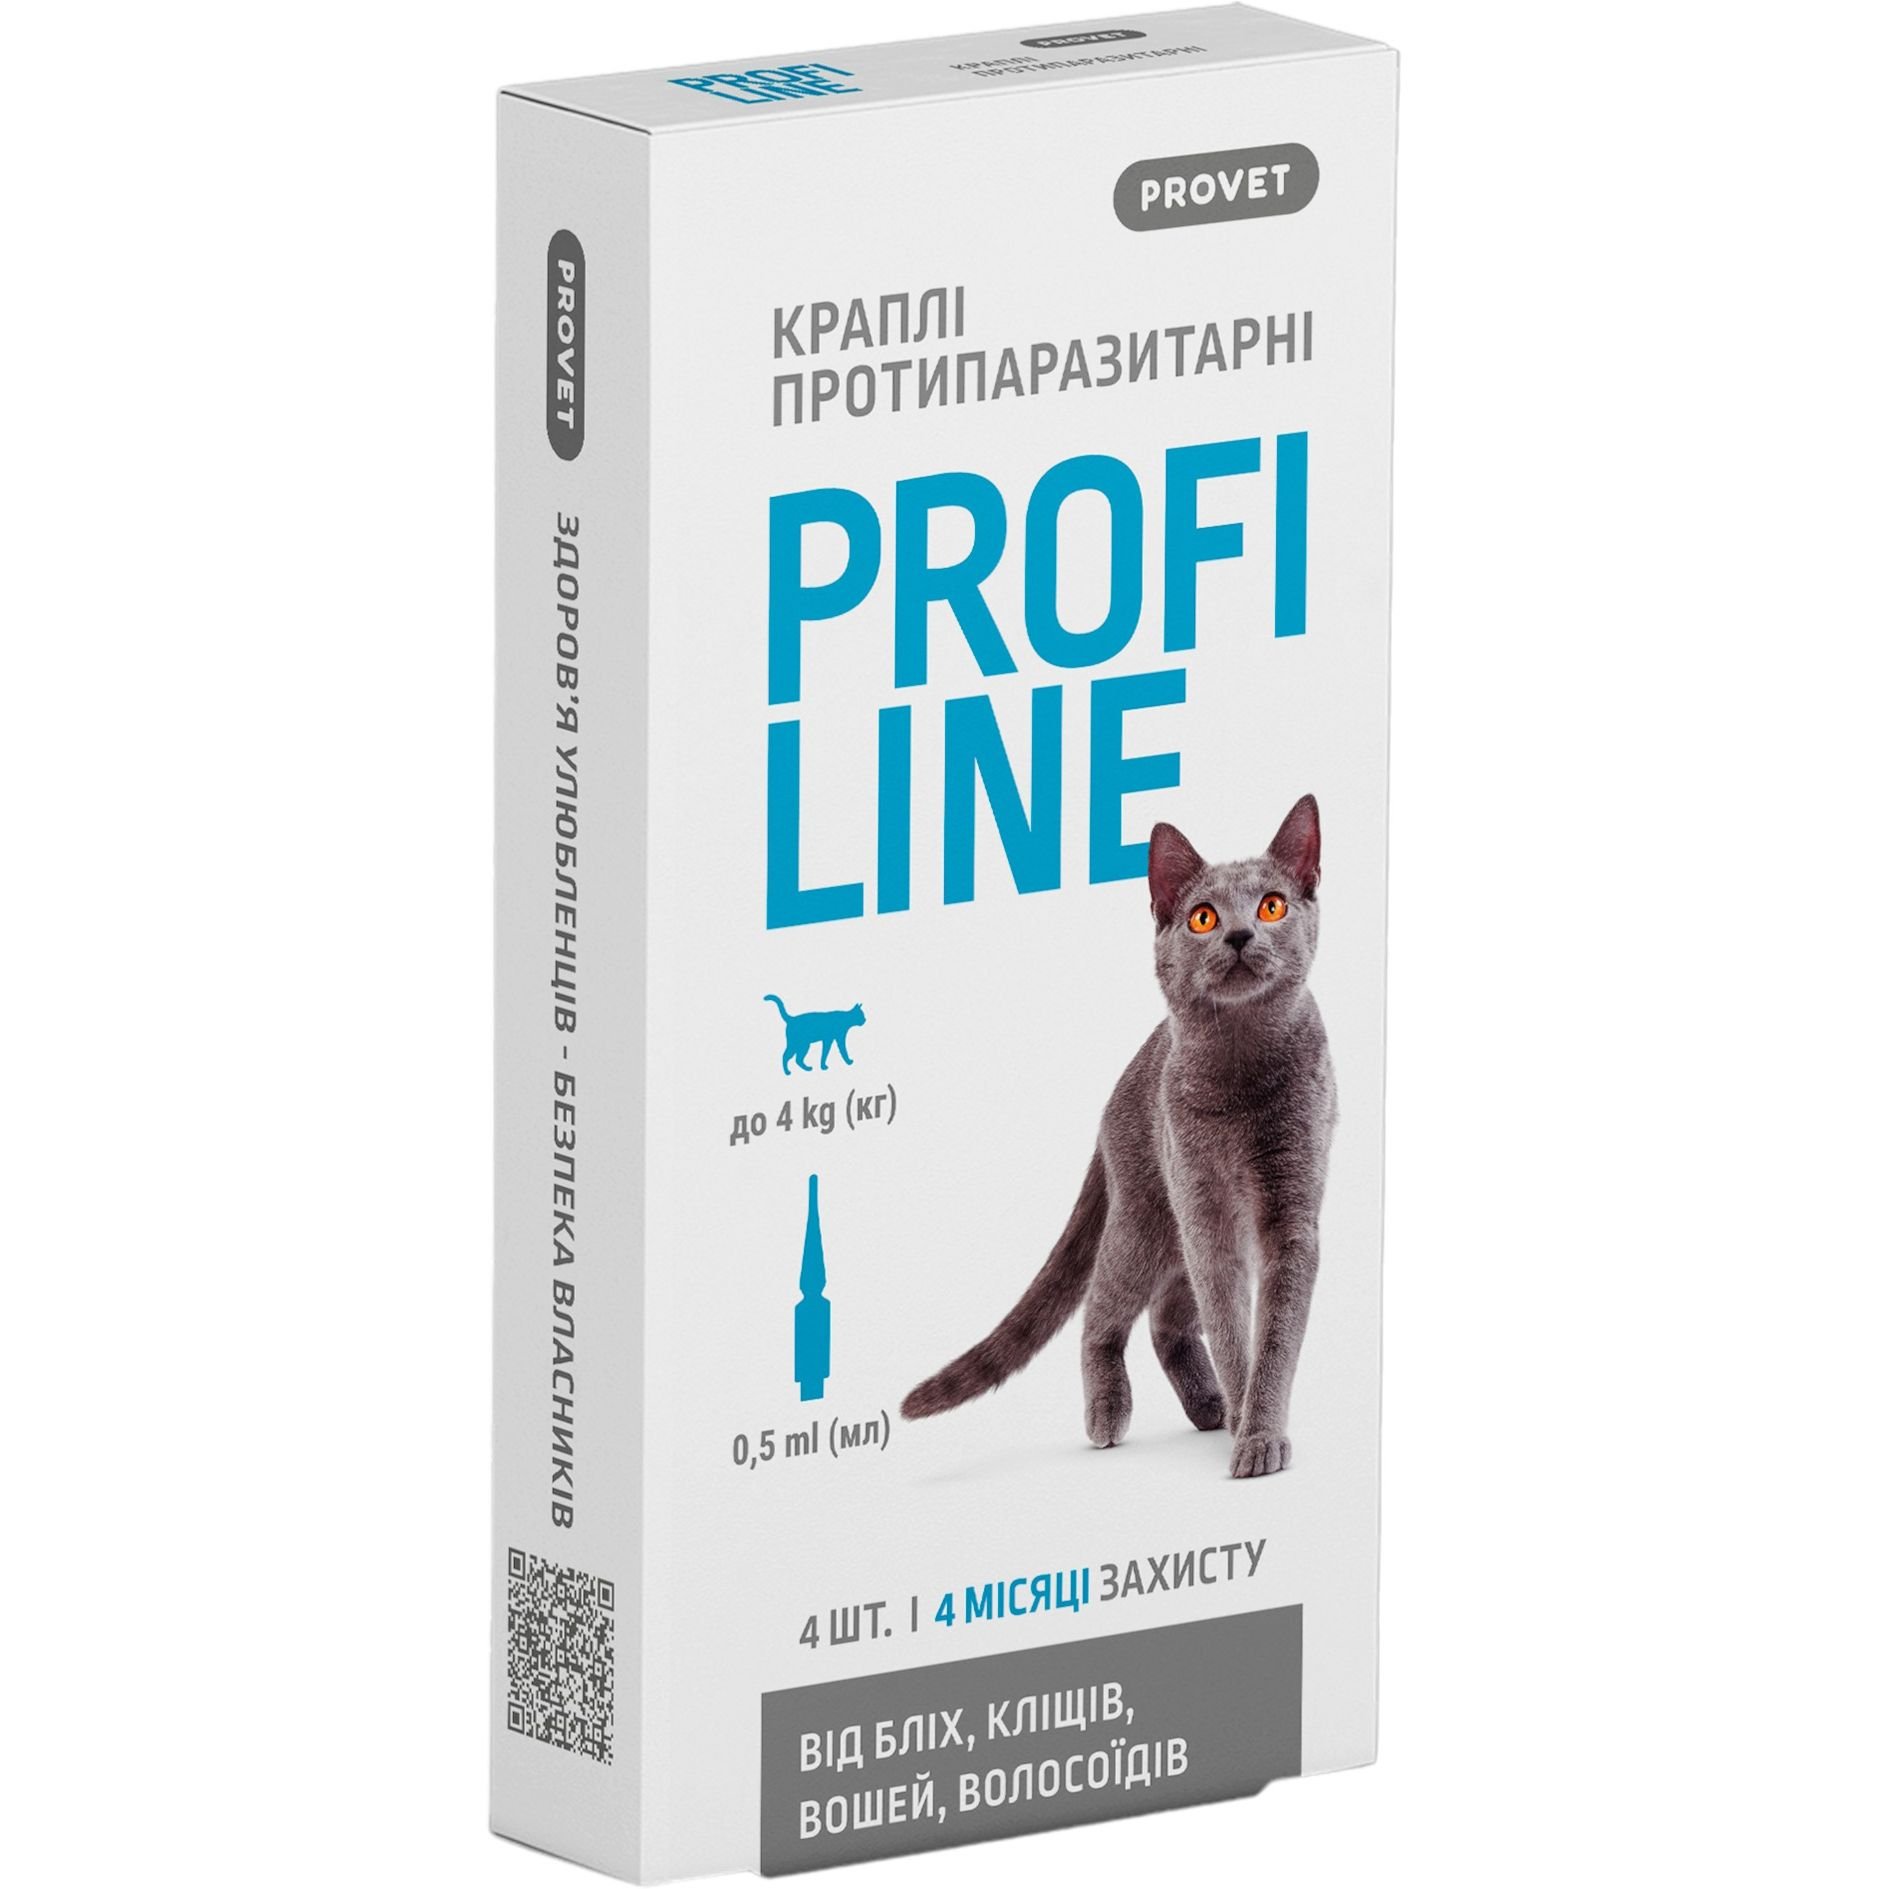 Капли на холку для кошек ProVET Profiline от внешних паразитов, до 4 кг, 4 пипетки по 0.5 мл - фото 1